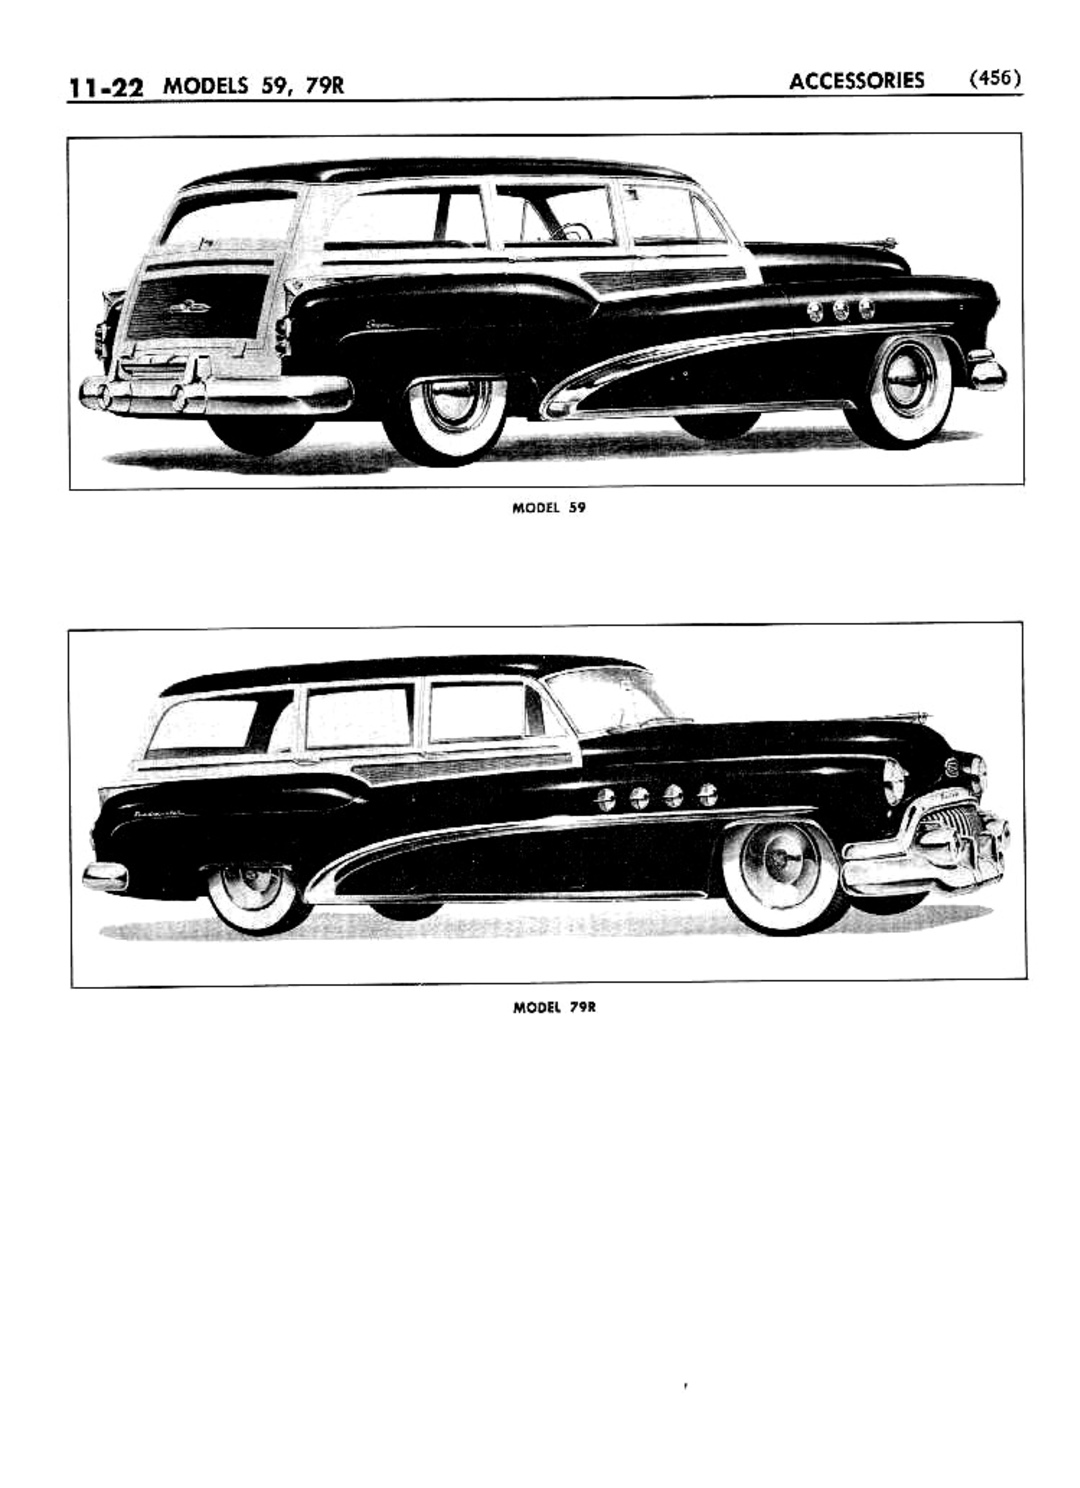 n_12 1952 Buick Shop Manual - Accessories-022-022.jpg